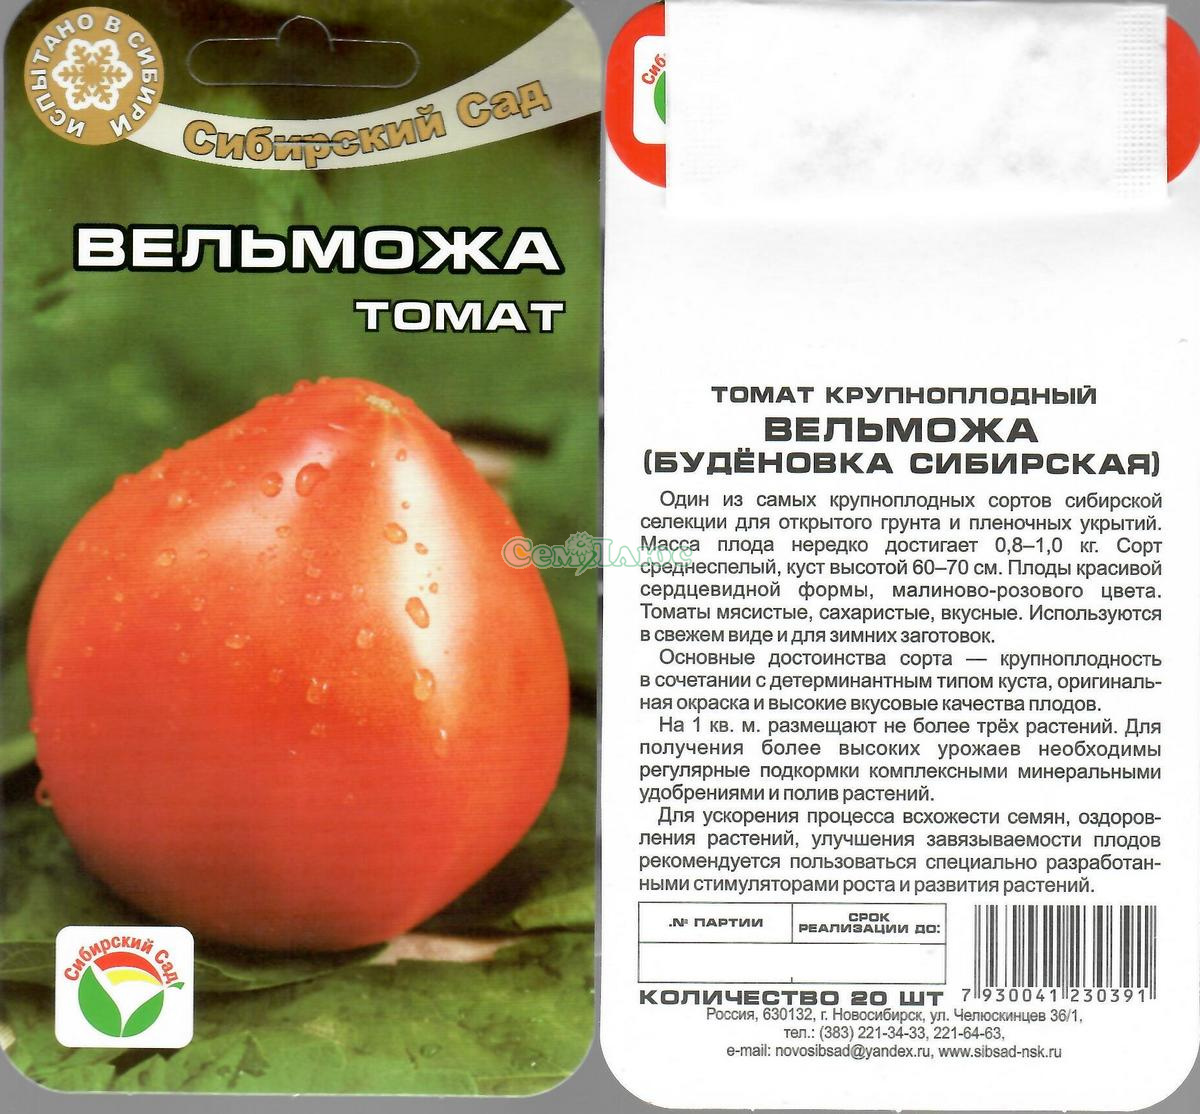 Дающий обильный урожай вкуснейших помидоров томат «буденовка» — выращиваем самостоятельно на участке или в теплице